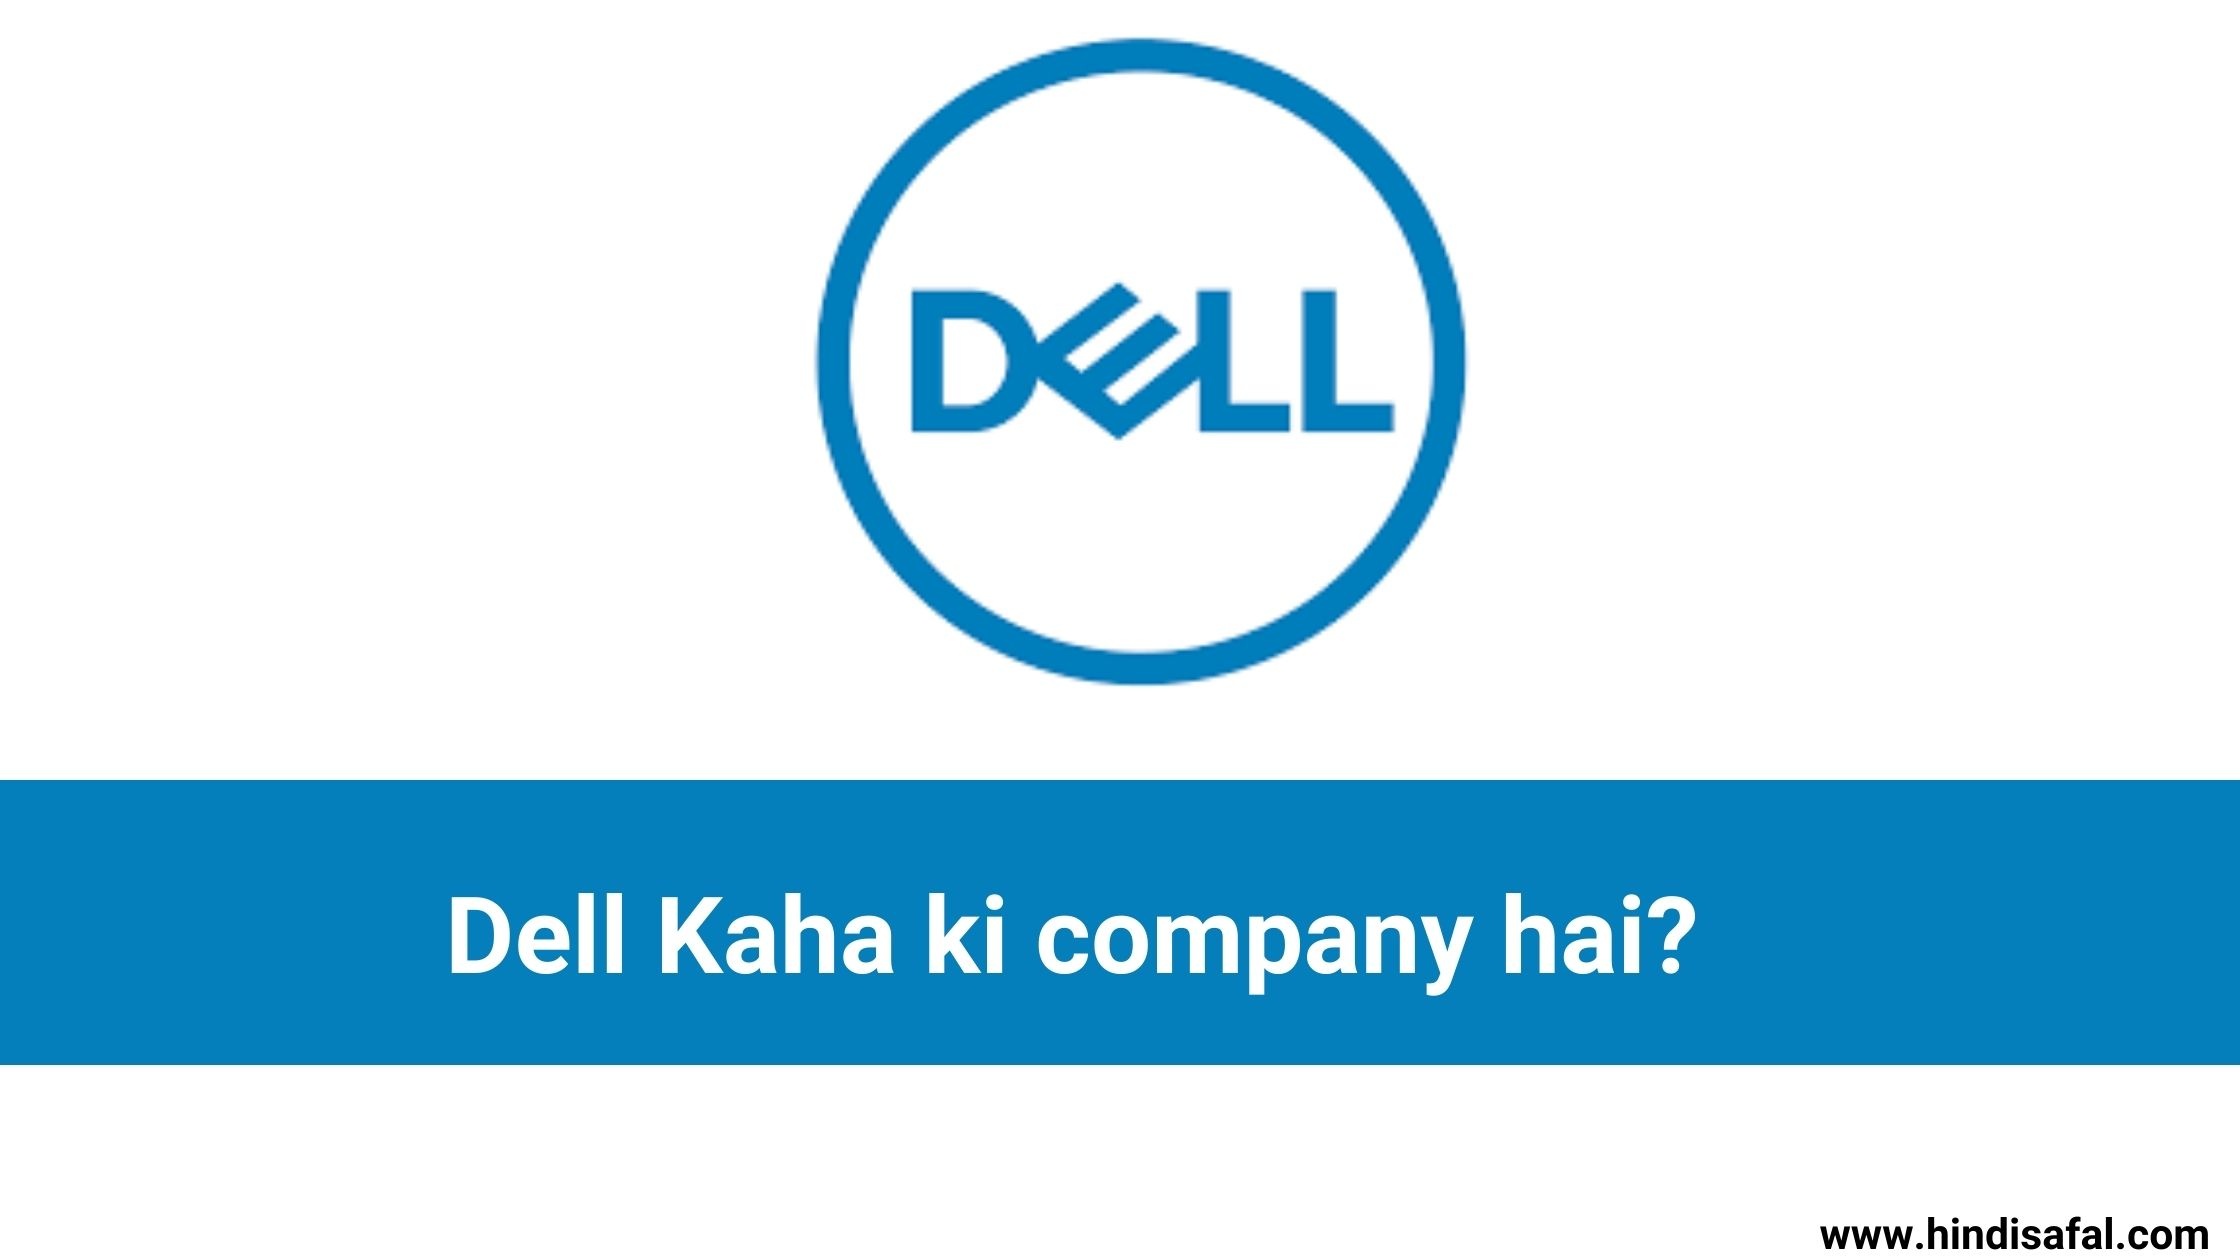 Dell Kaha ki company hai?